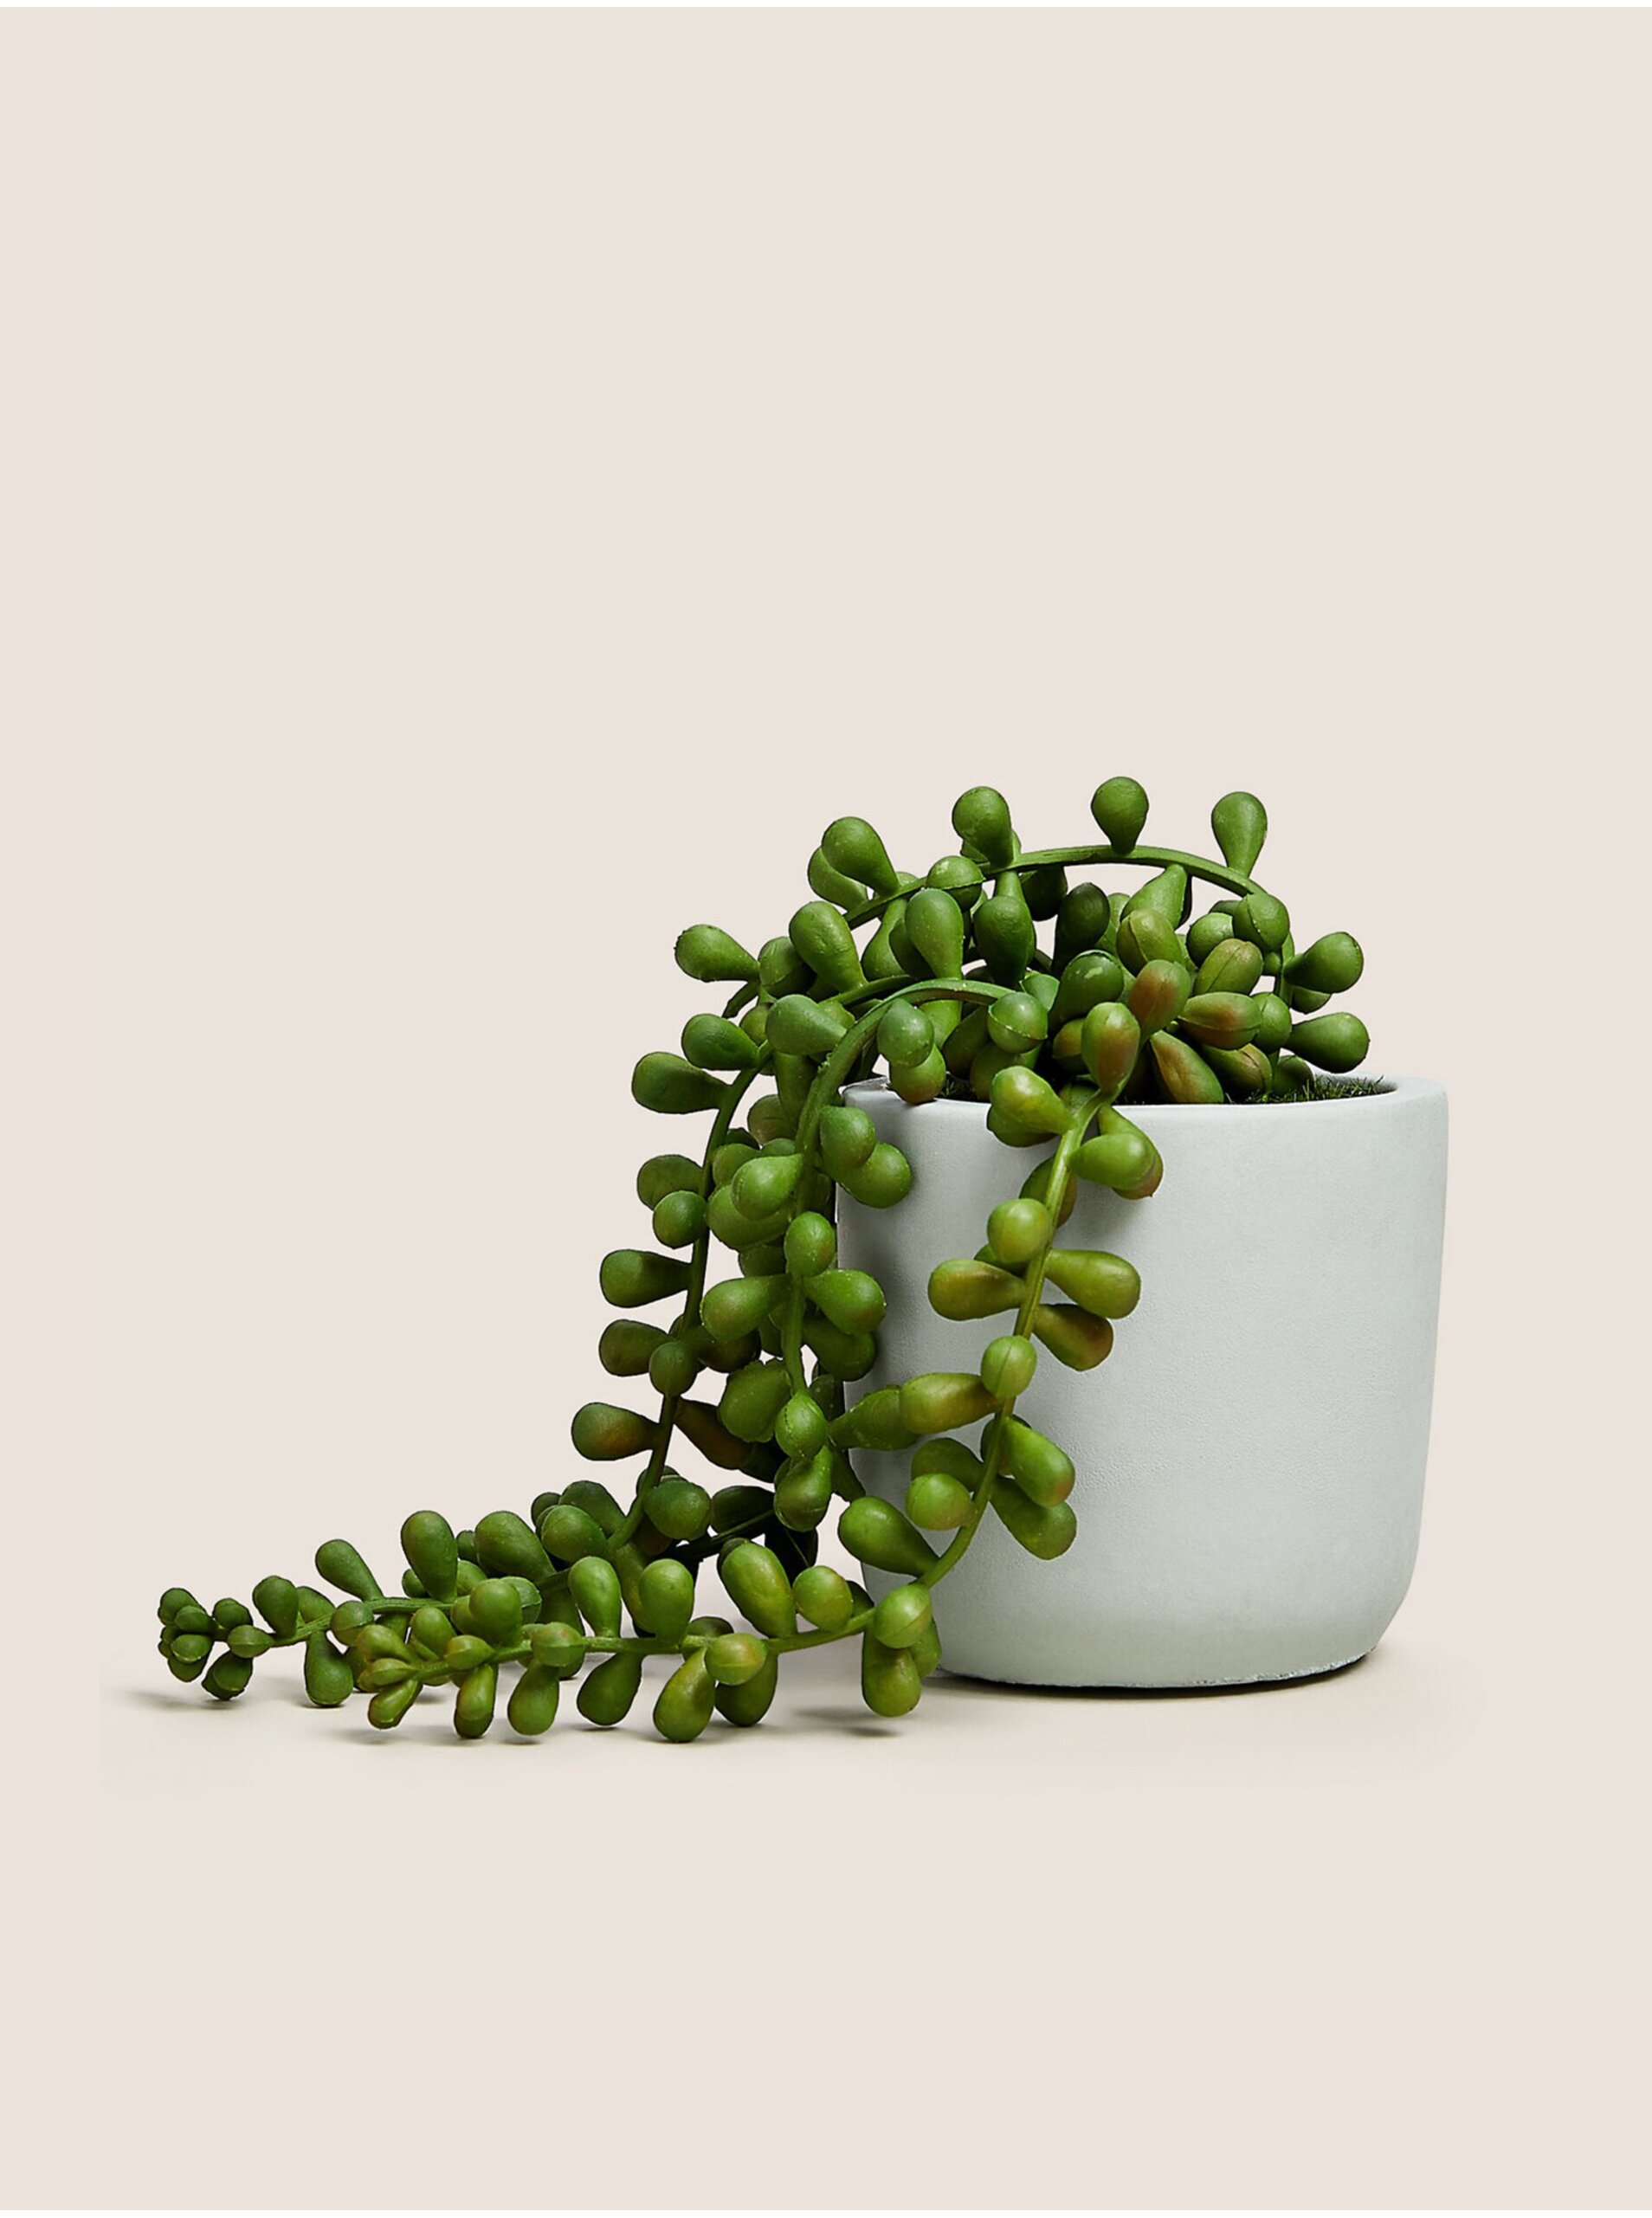 E-shop Zelená umělá převislá květina v květináči ve světle šedé barvě Marks & Spencer